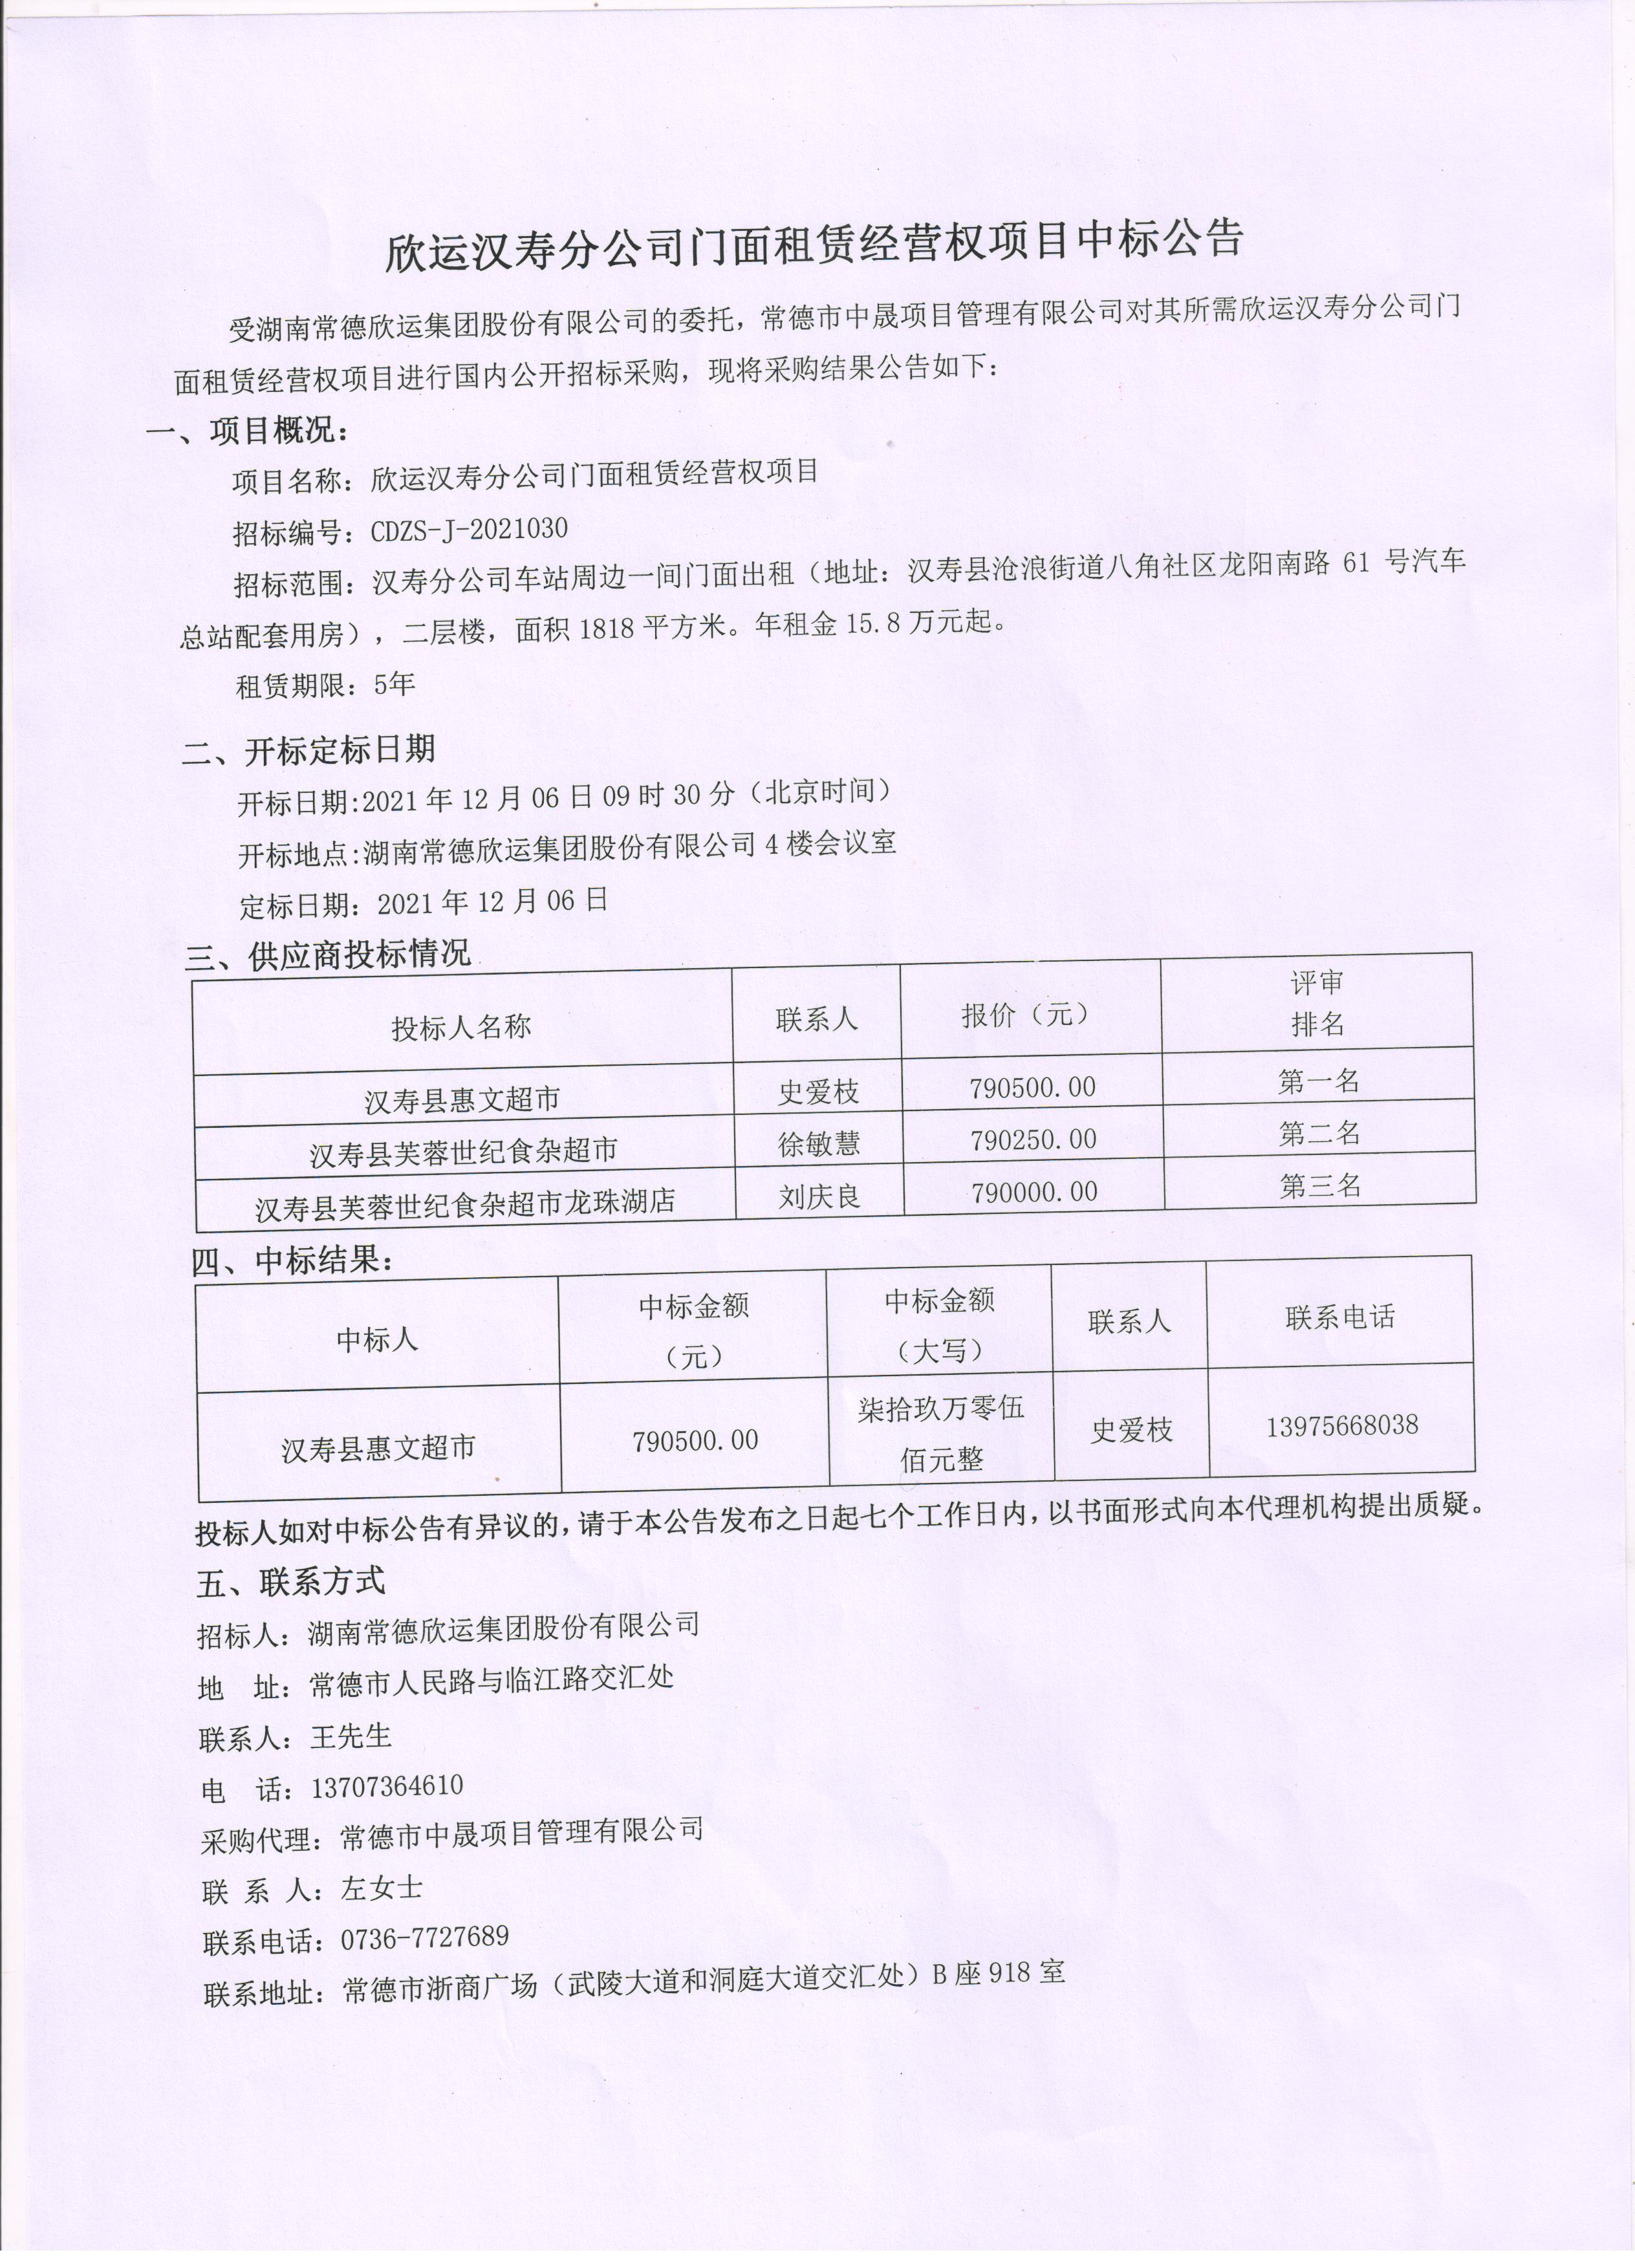 欣运汉寿分公司门面租赁经营权项目中标公告(图1)